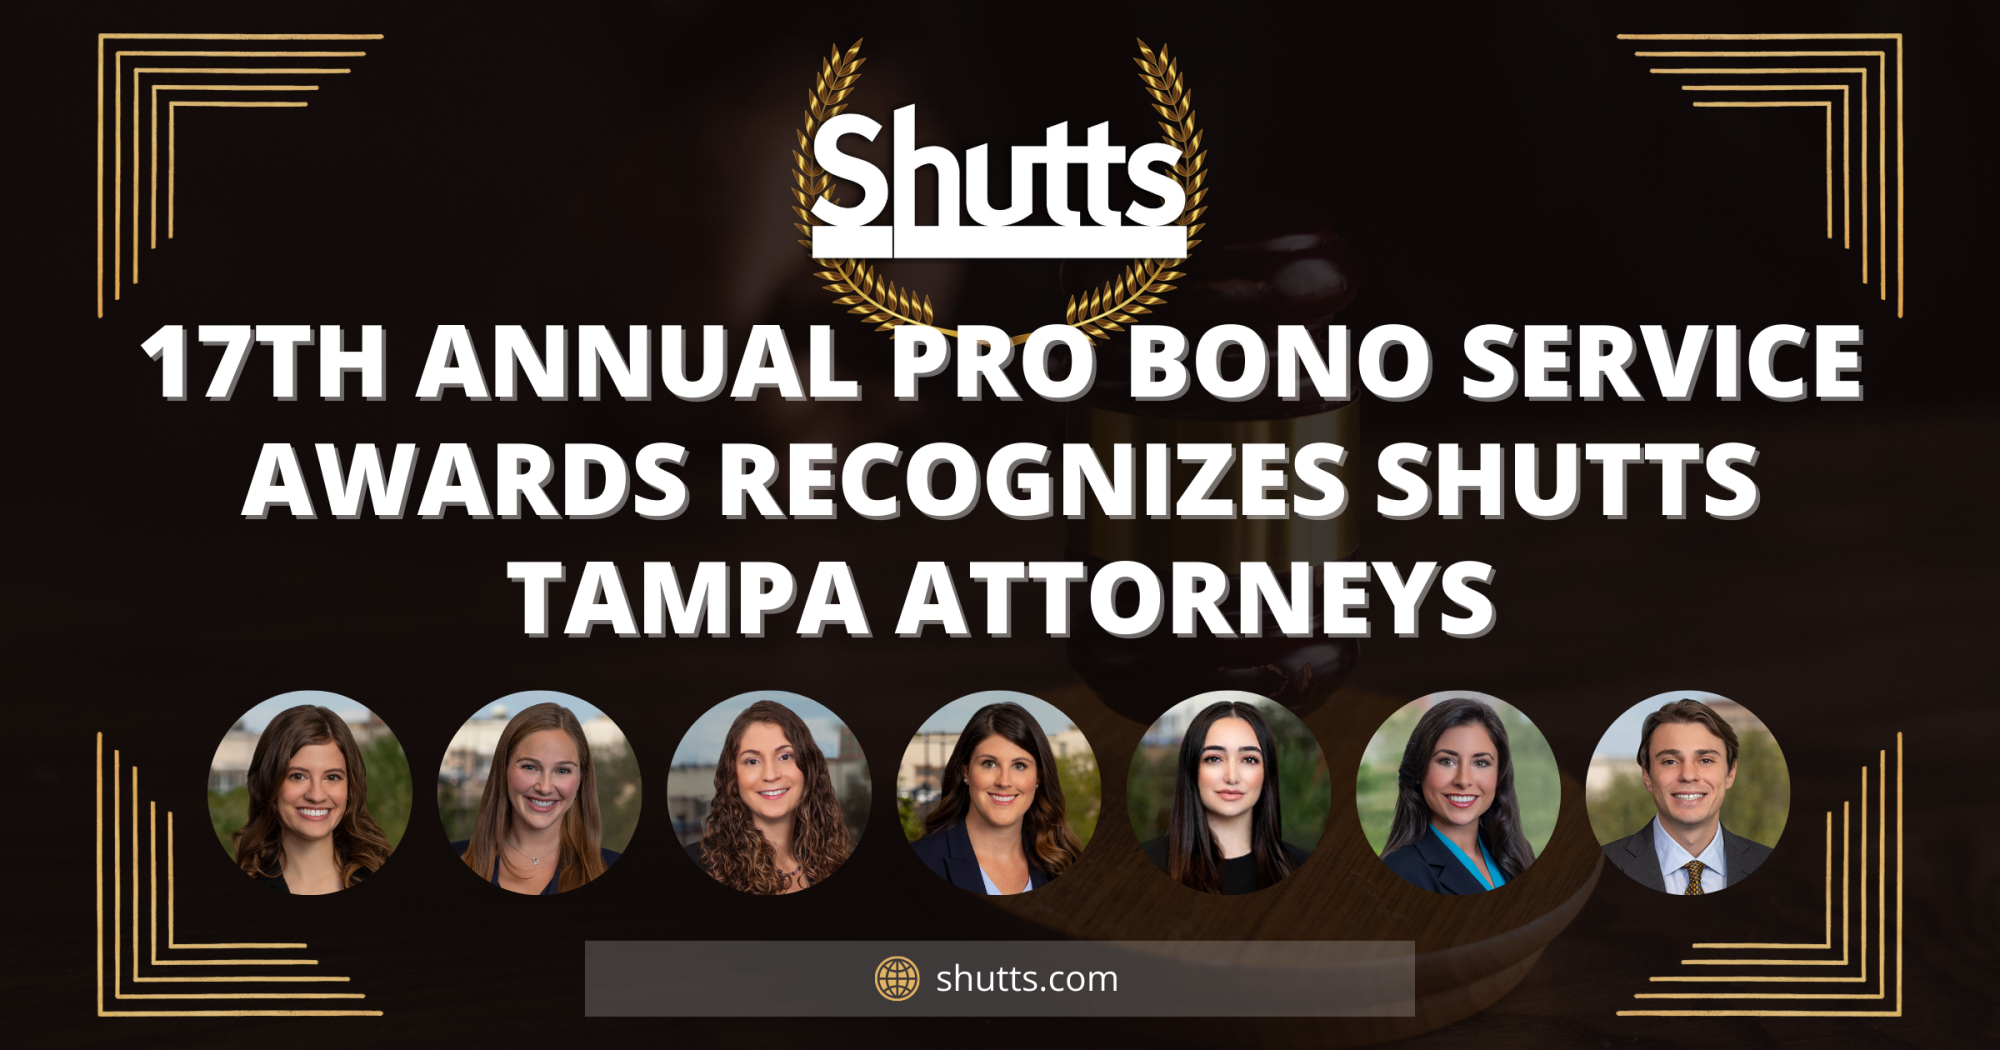 17th Annual Pro Bono Service Awards Recognizes Shutts Tampa Attorneys